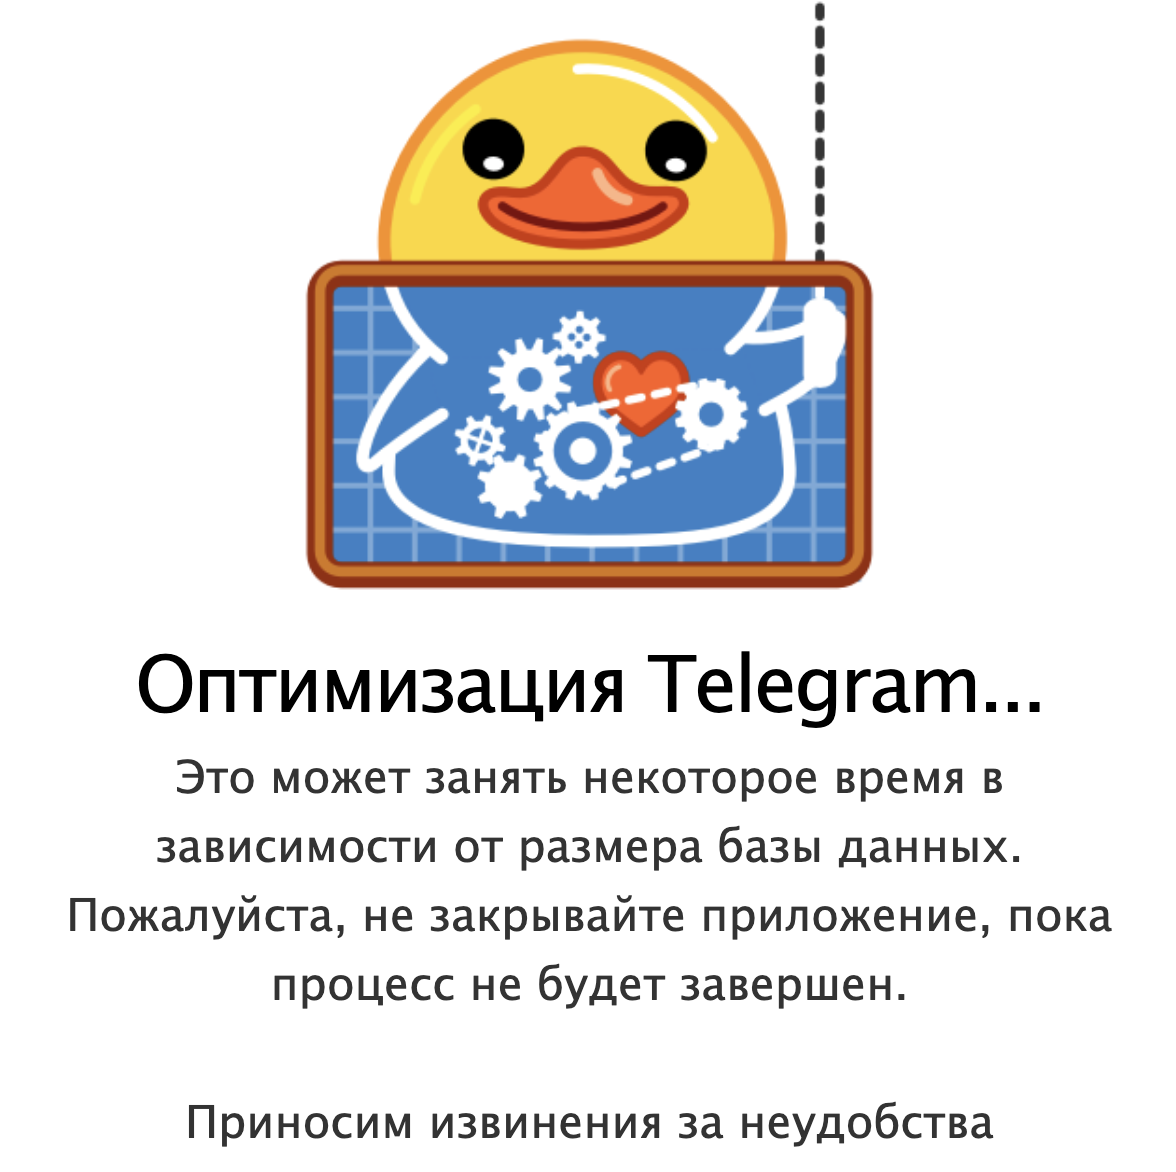 Языки для телеграмма смешные для андроид фото 68